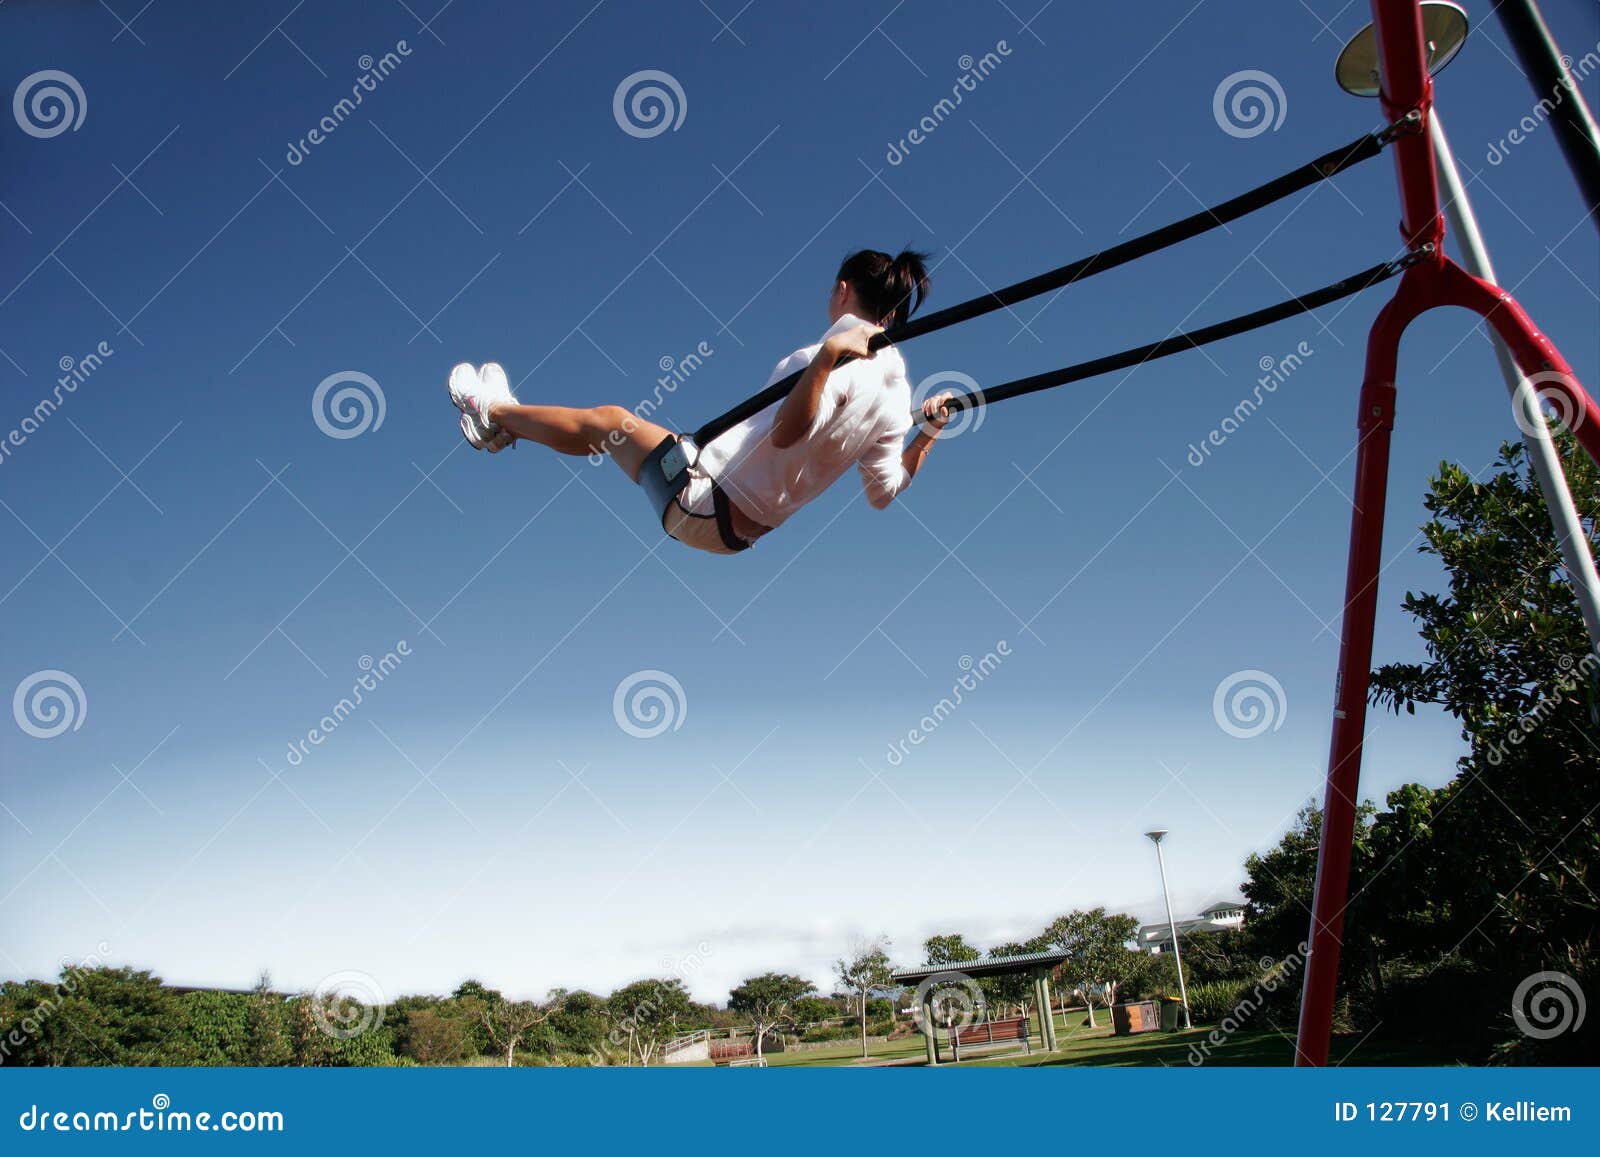 swinging high